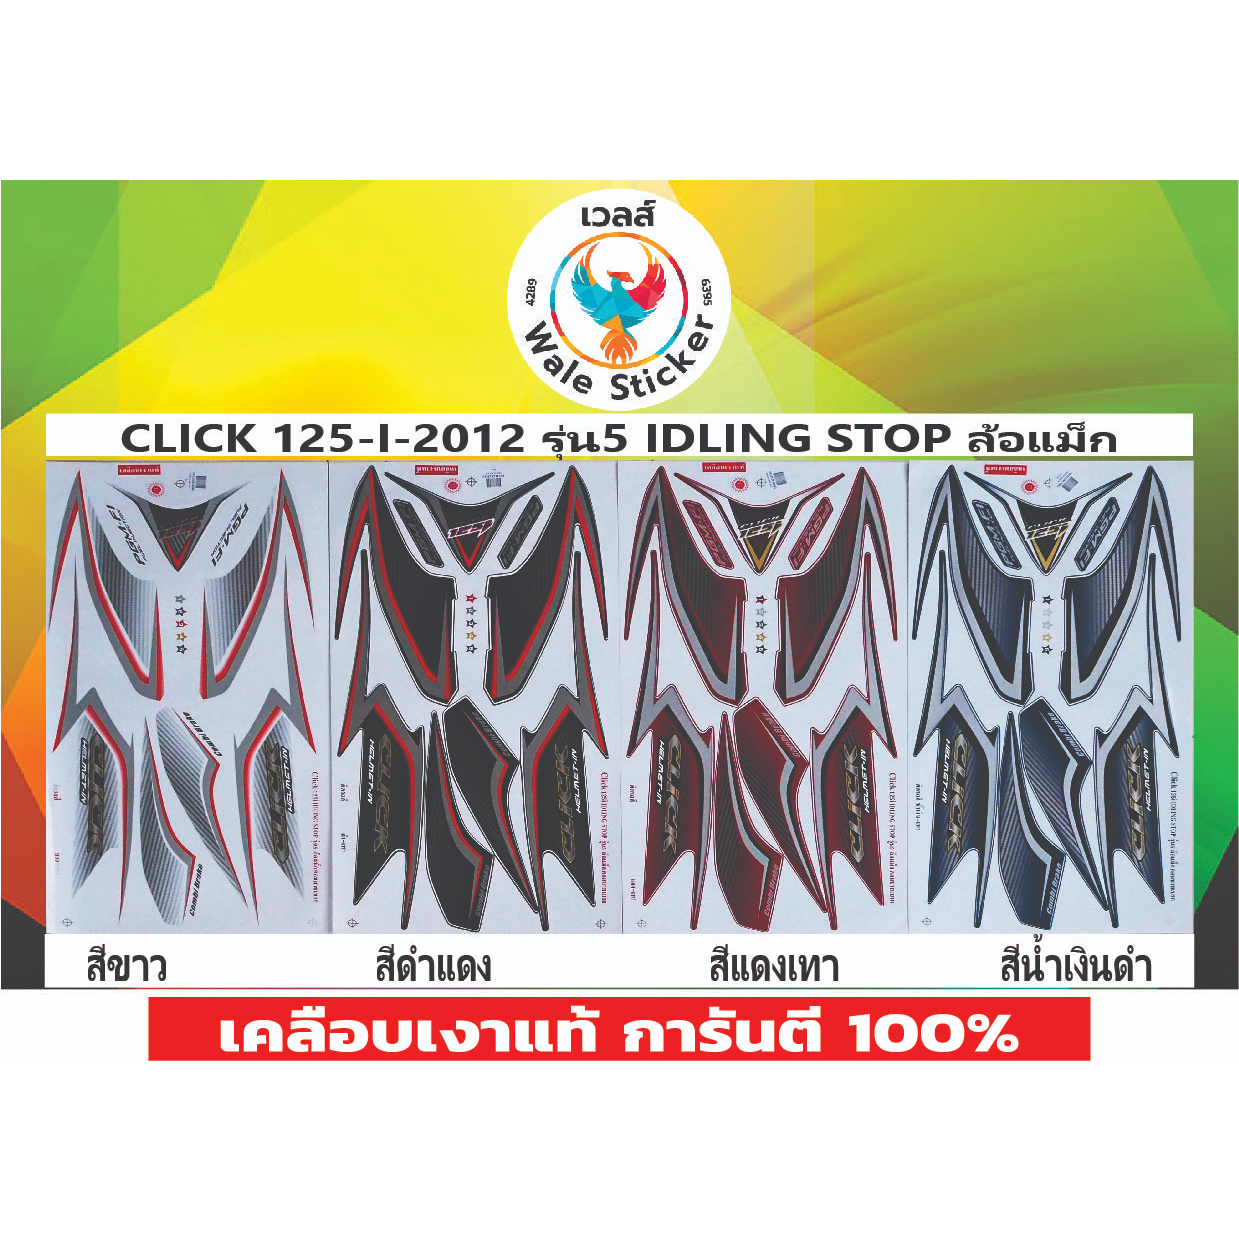 📌สติ๊กเกอร์แต่งรถรุ่น CLICK 125-I-2012 รุ่น5 IDLING STOP ล้อแม็ก💥